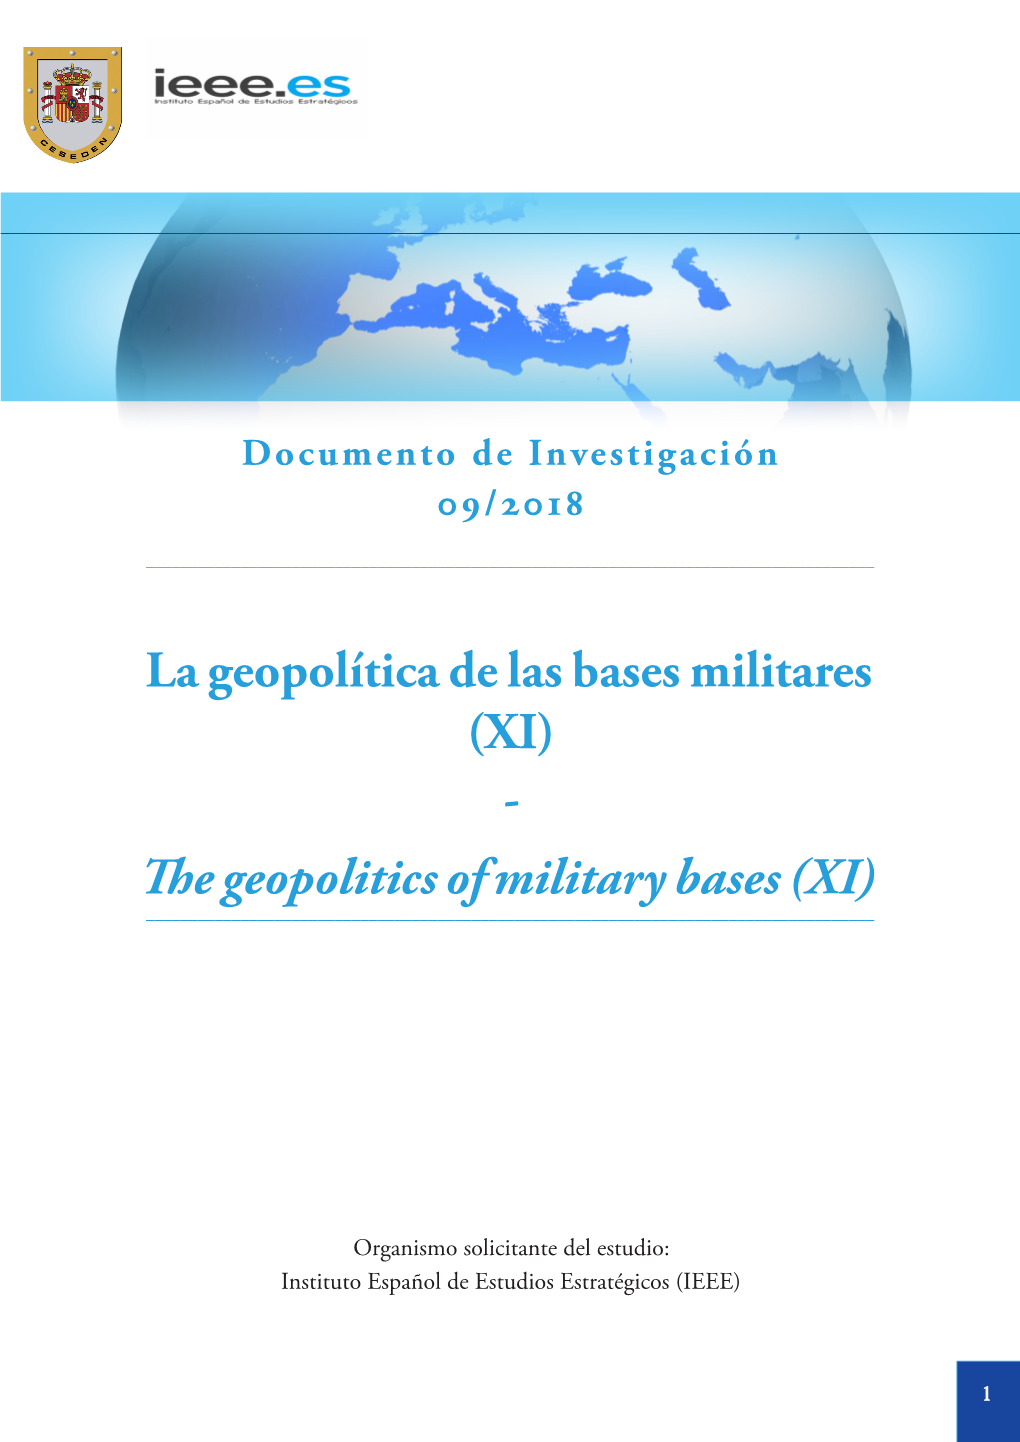 La Geopolítica De Las Bases Militares (XI) - the Geopolitics of Military Bases (XI) ______